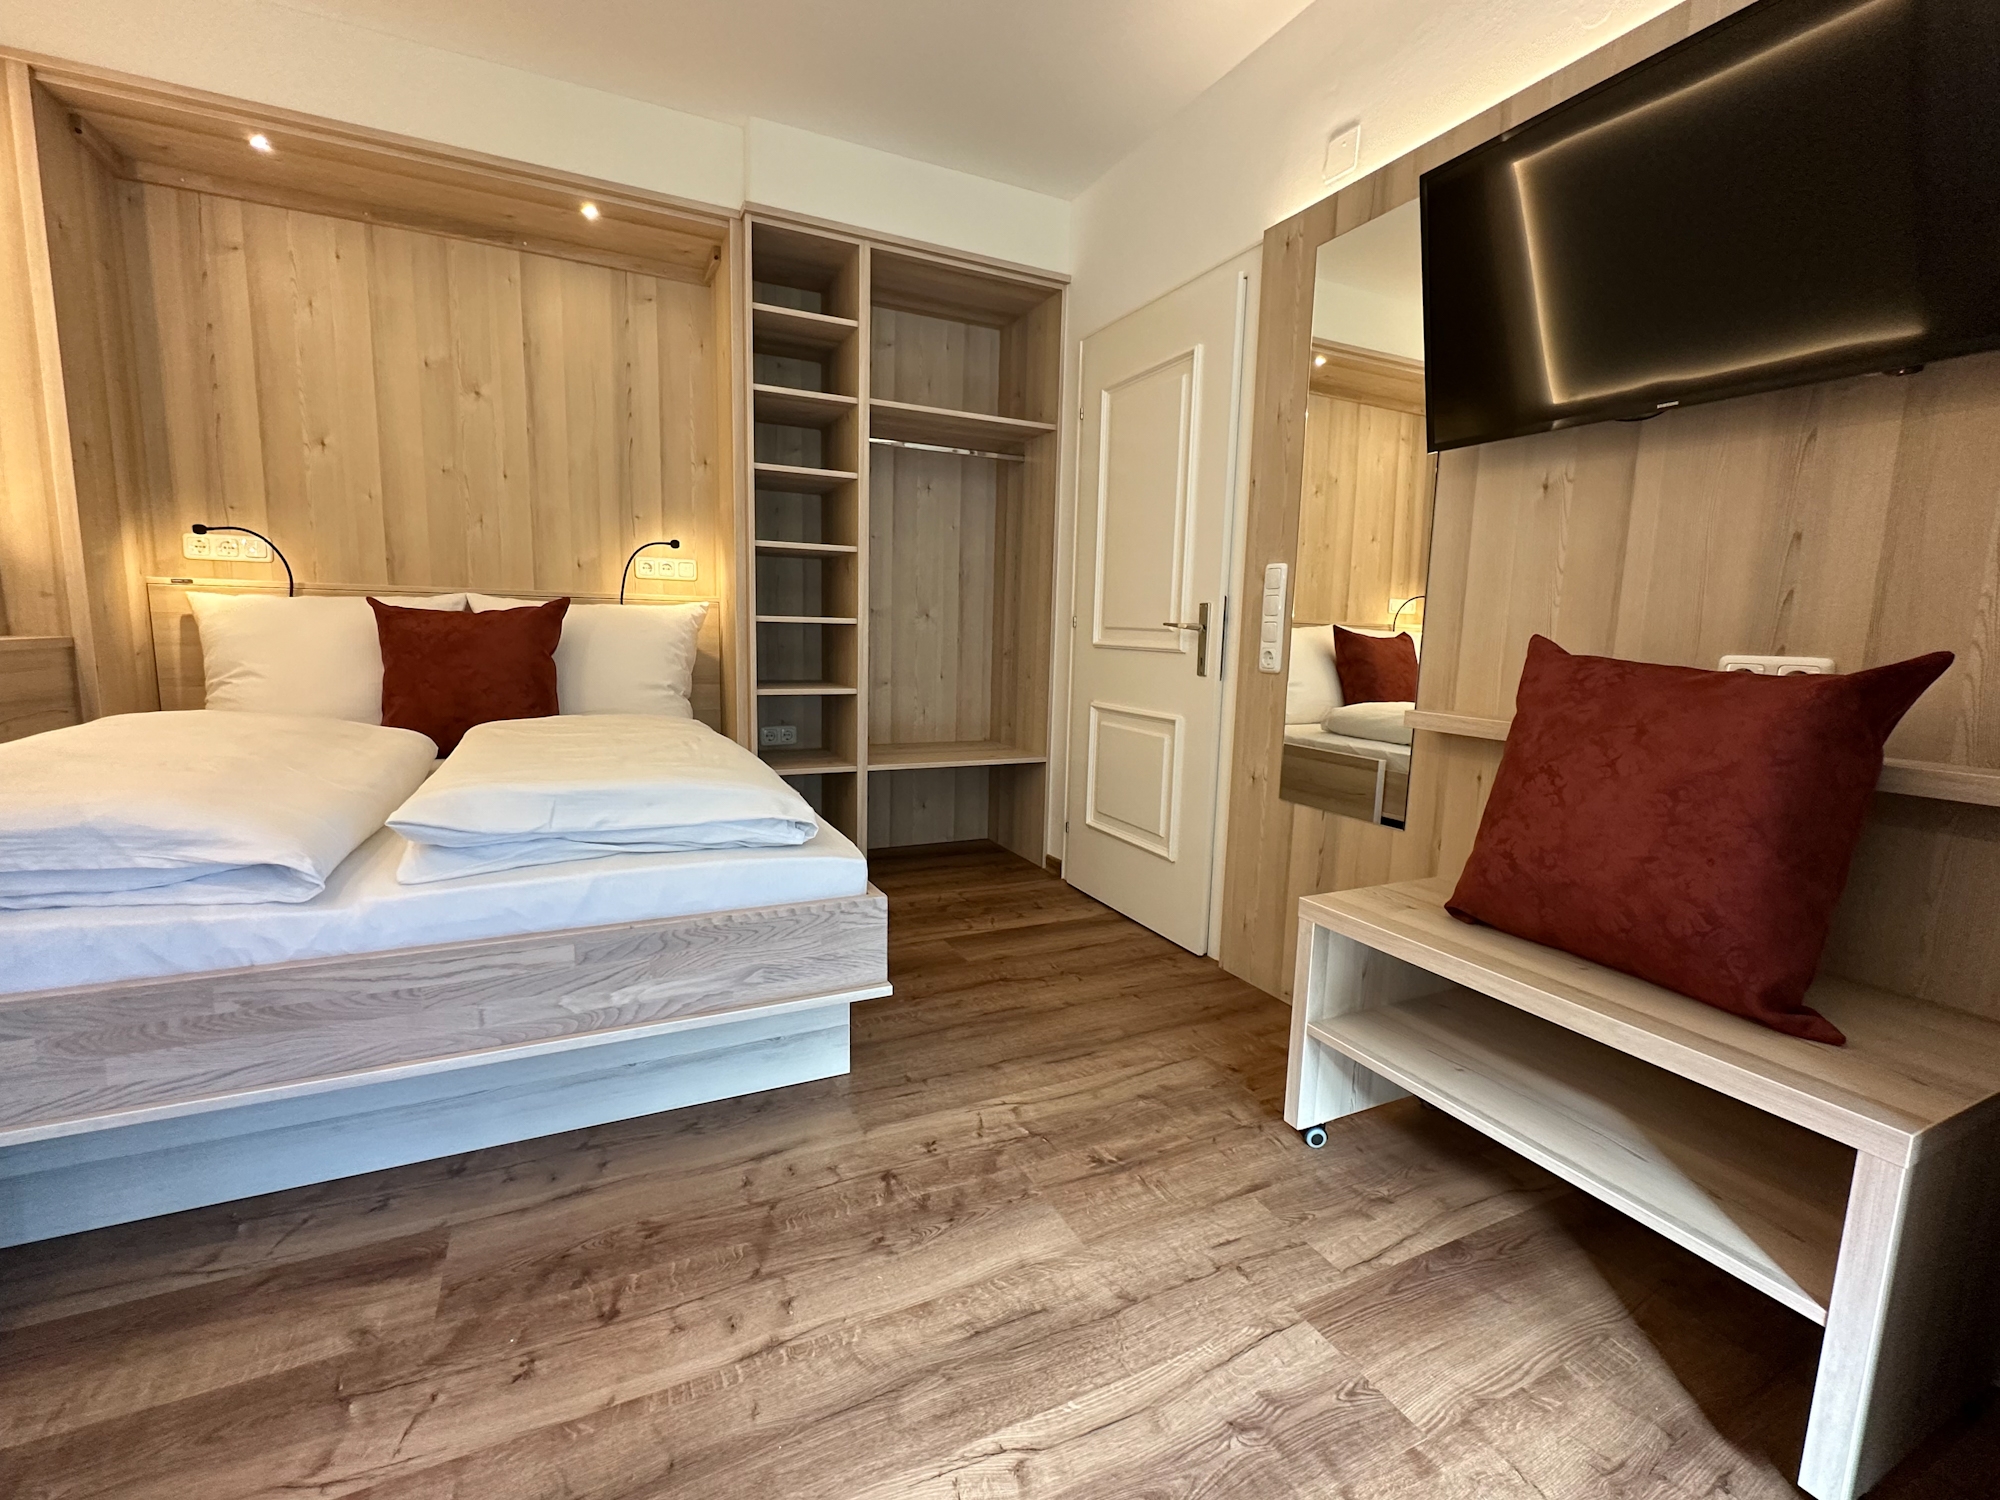 Appartementhaus Zillertal: Ferienwohnung für 3 Personen - Doppelbett im Wohnbereich (Beispiel)